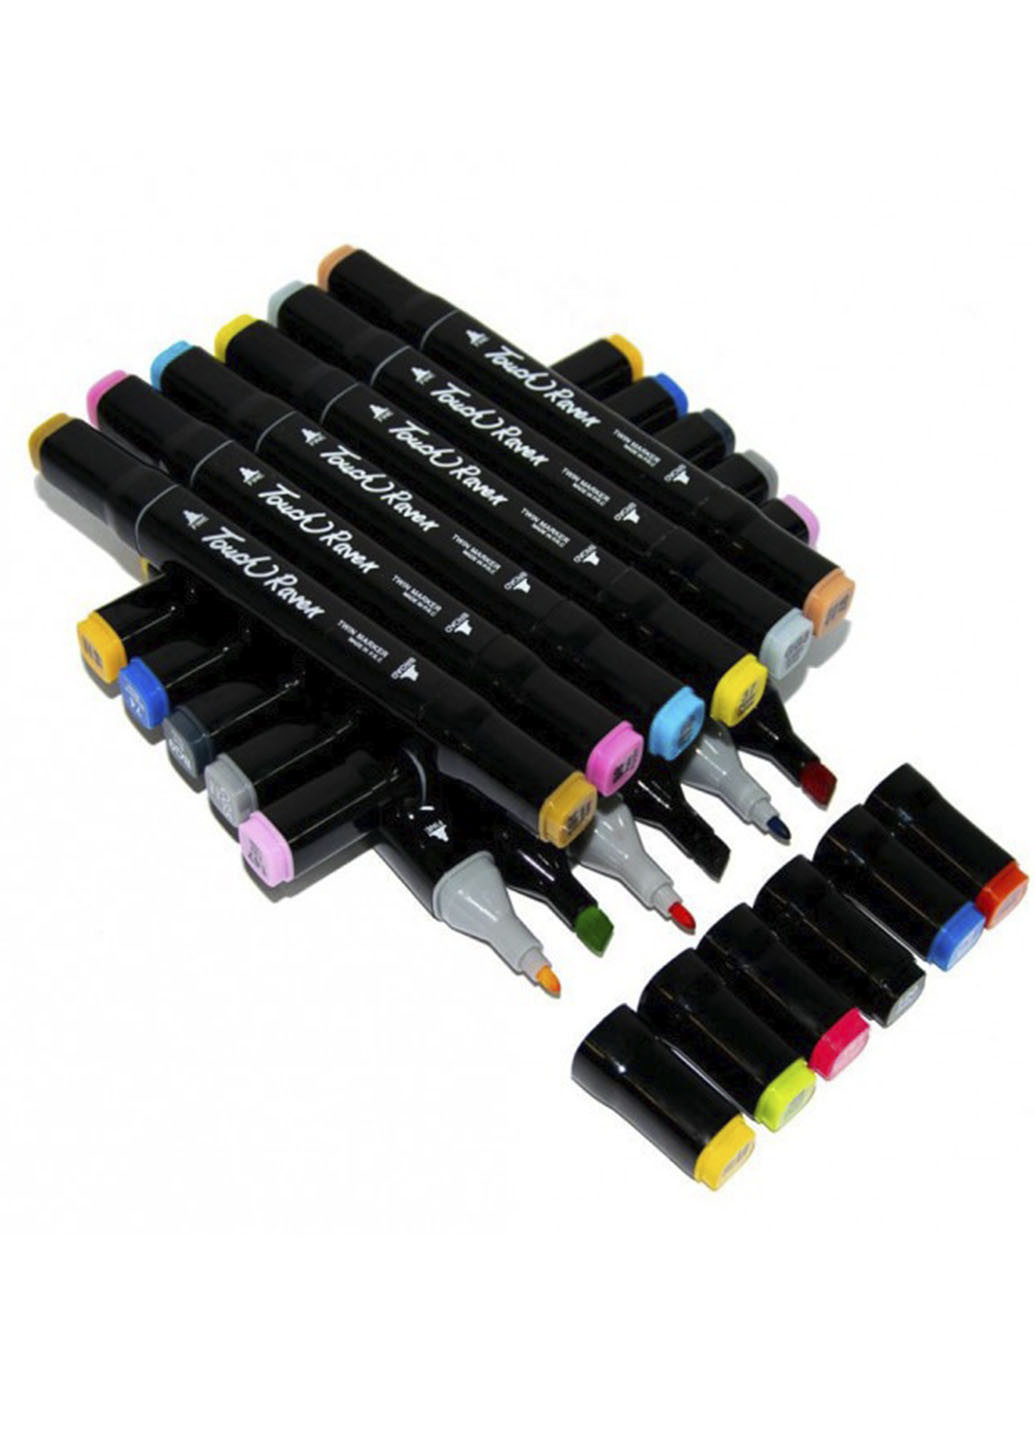 Набор двусторонних скетч маркеров Touchnew Brush 60 шт маркеры для рисования Good Idea однотонное чёрное